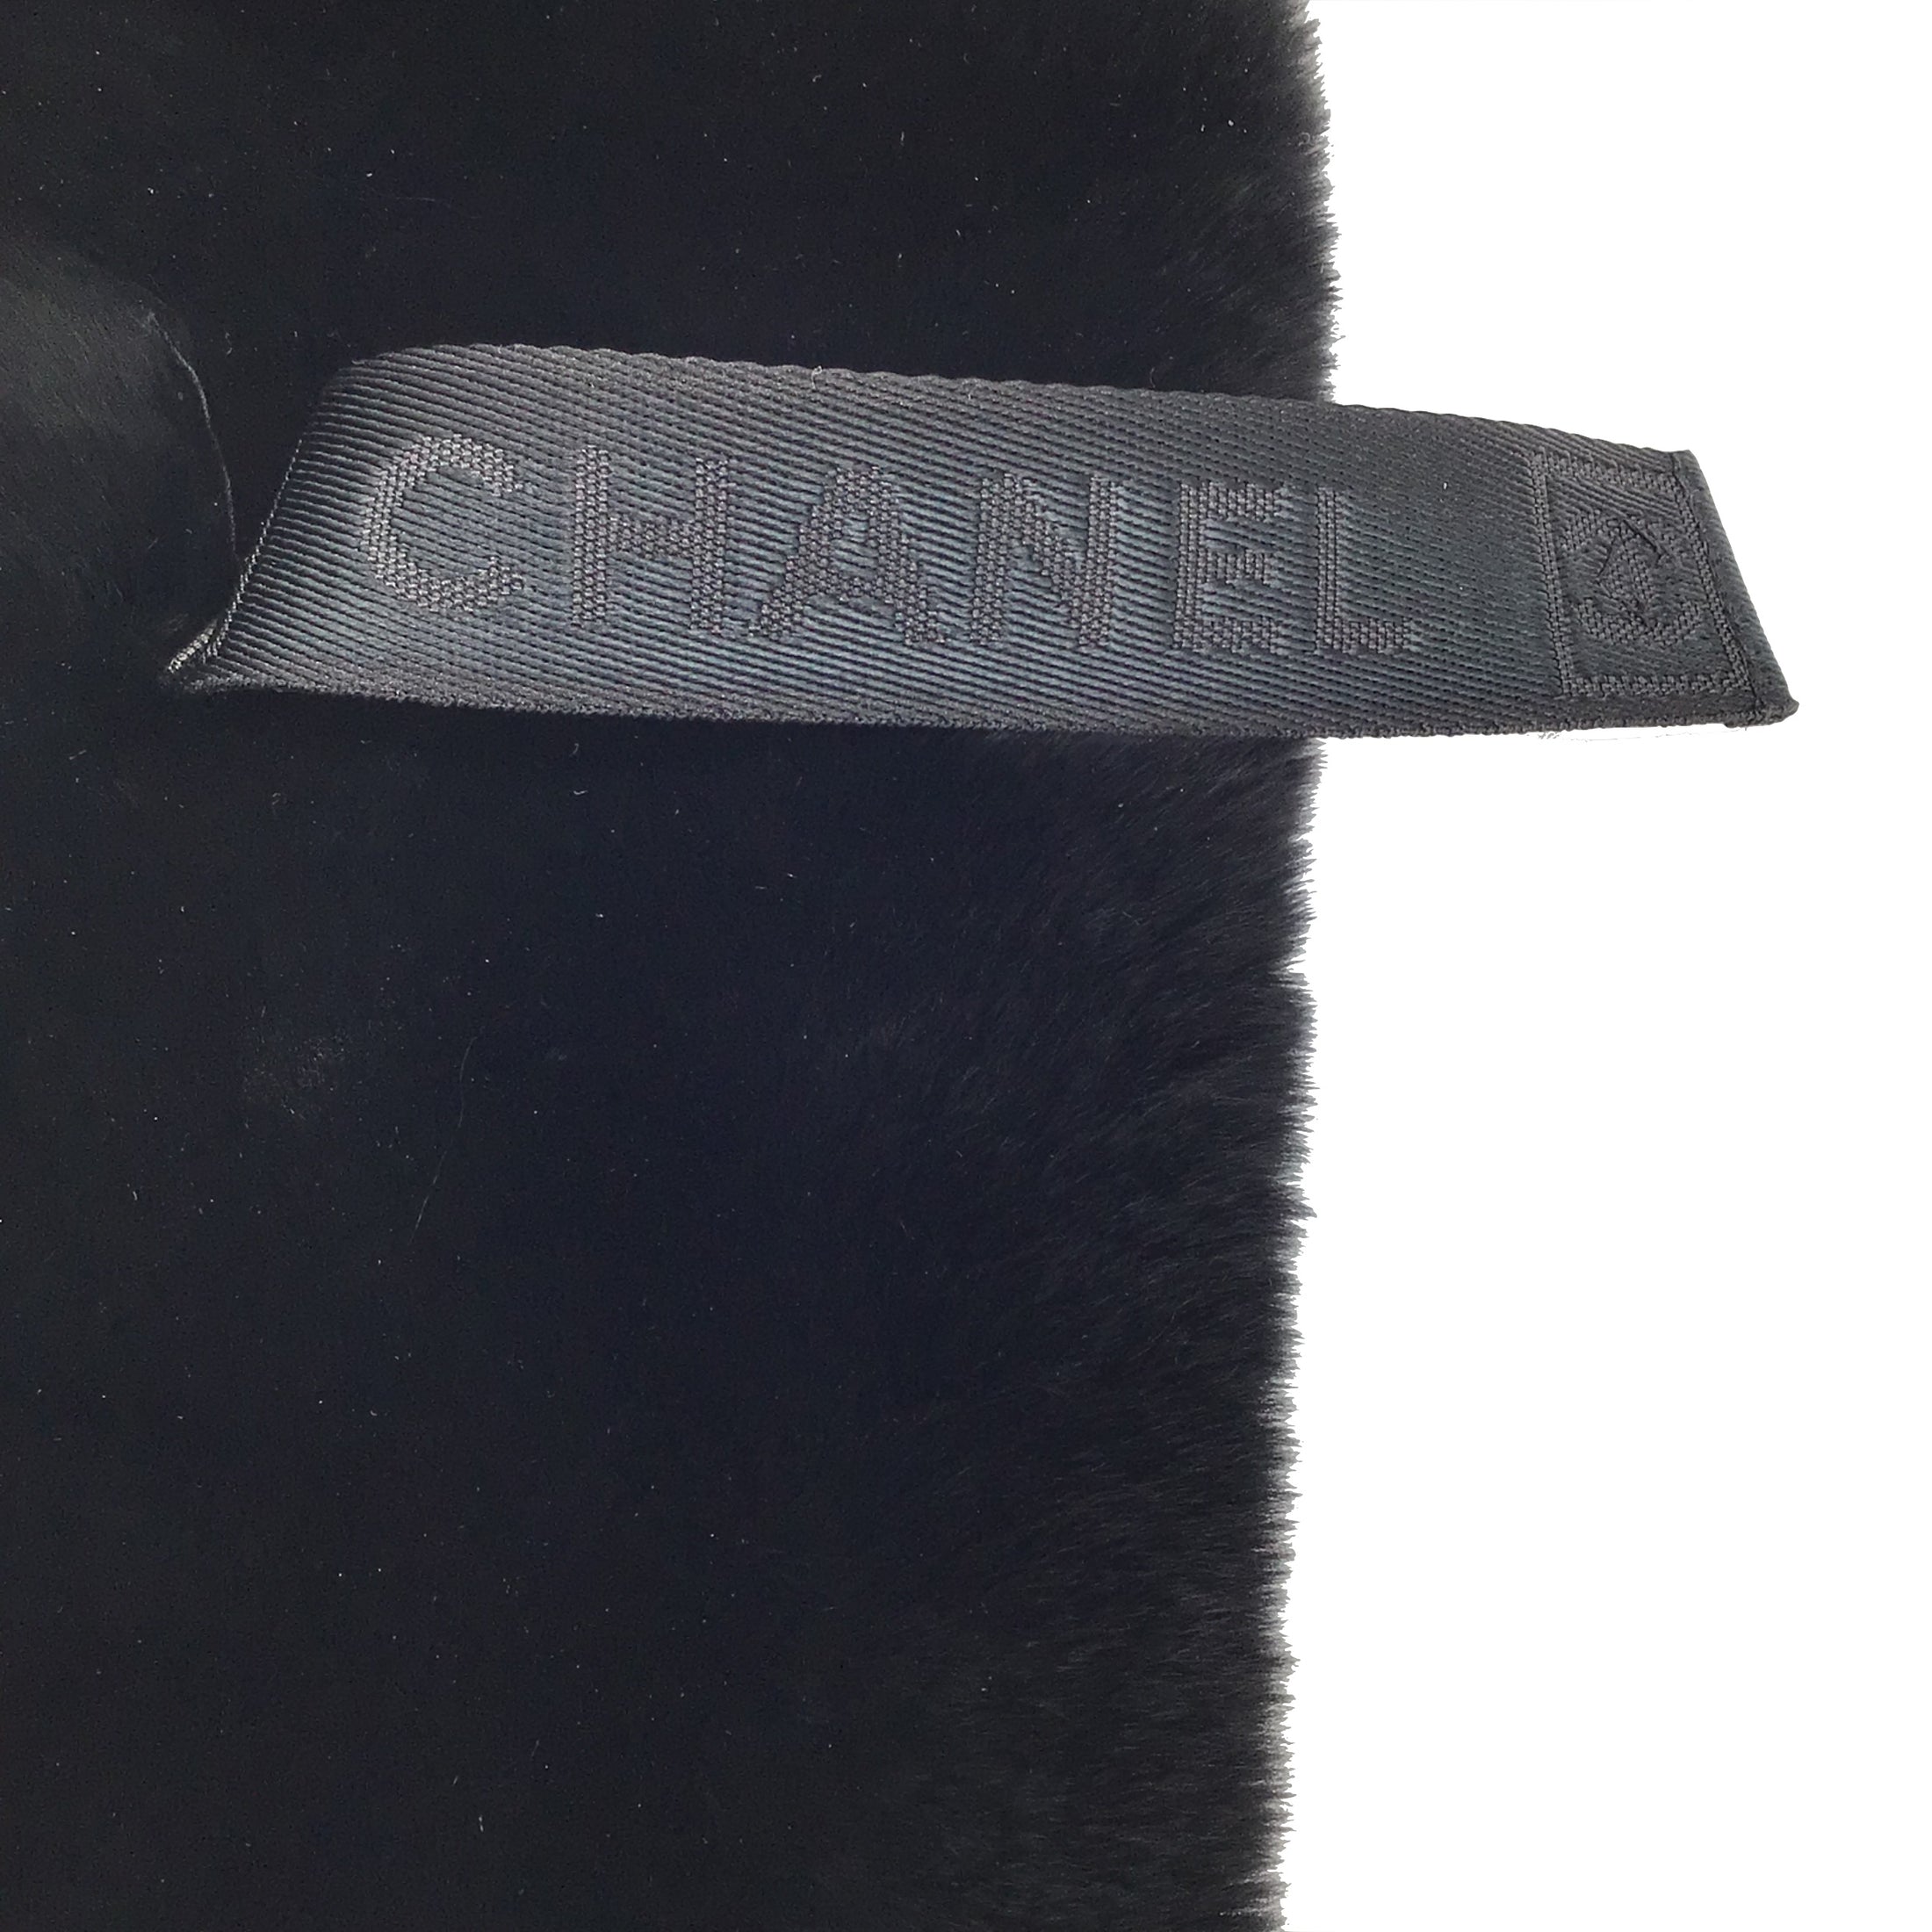 Chanel Black Rex Rabbit Fur Collar / Scarf